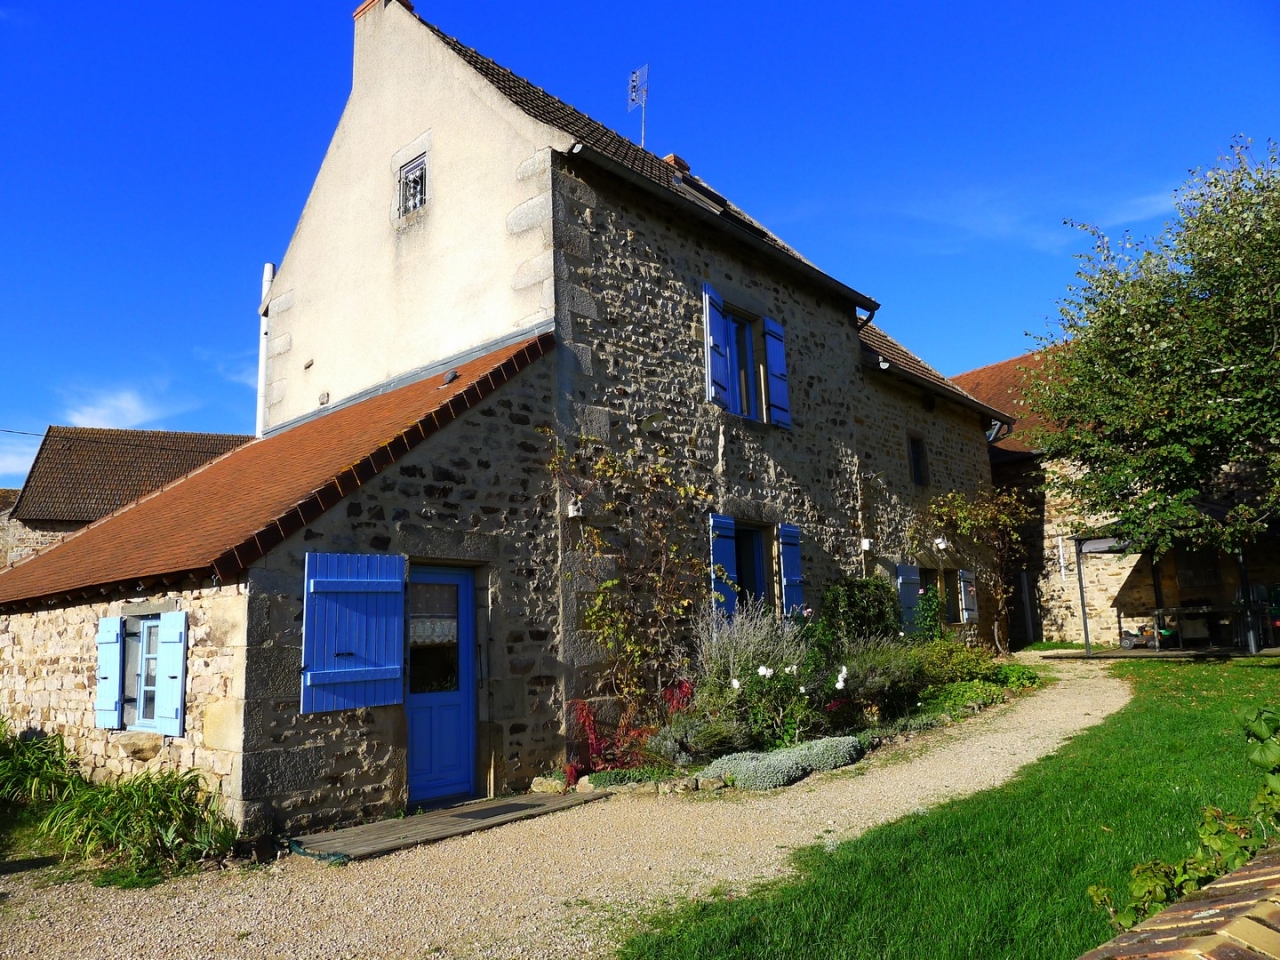 Farmhouse Charolais